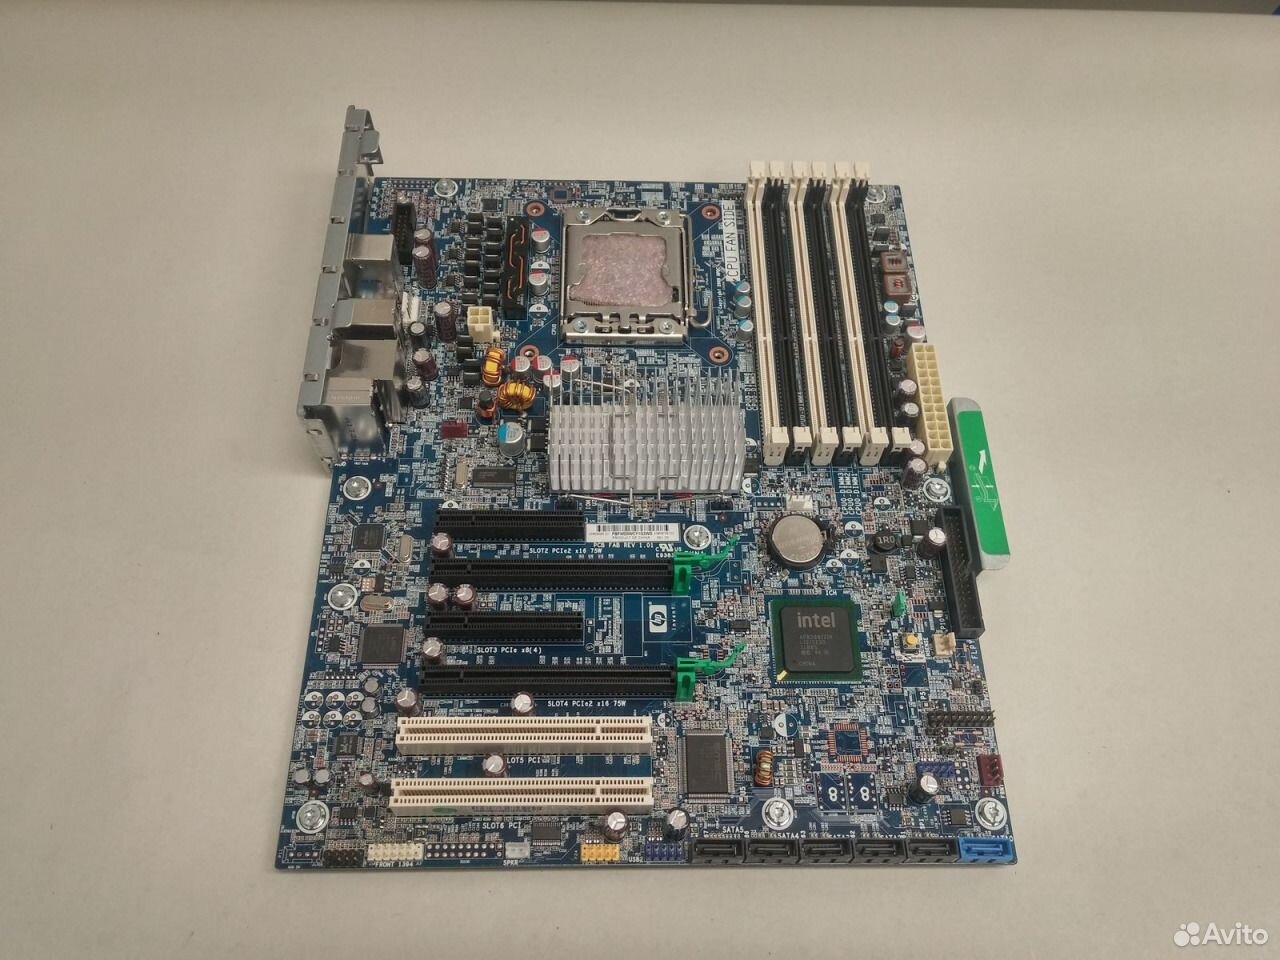 Hp 3396 motherboard